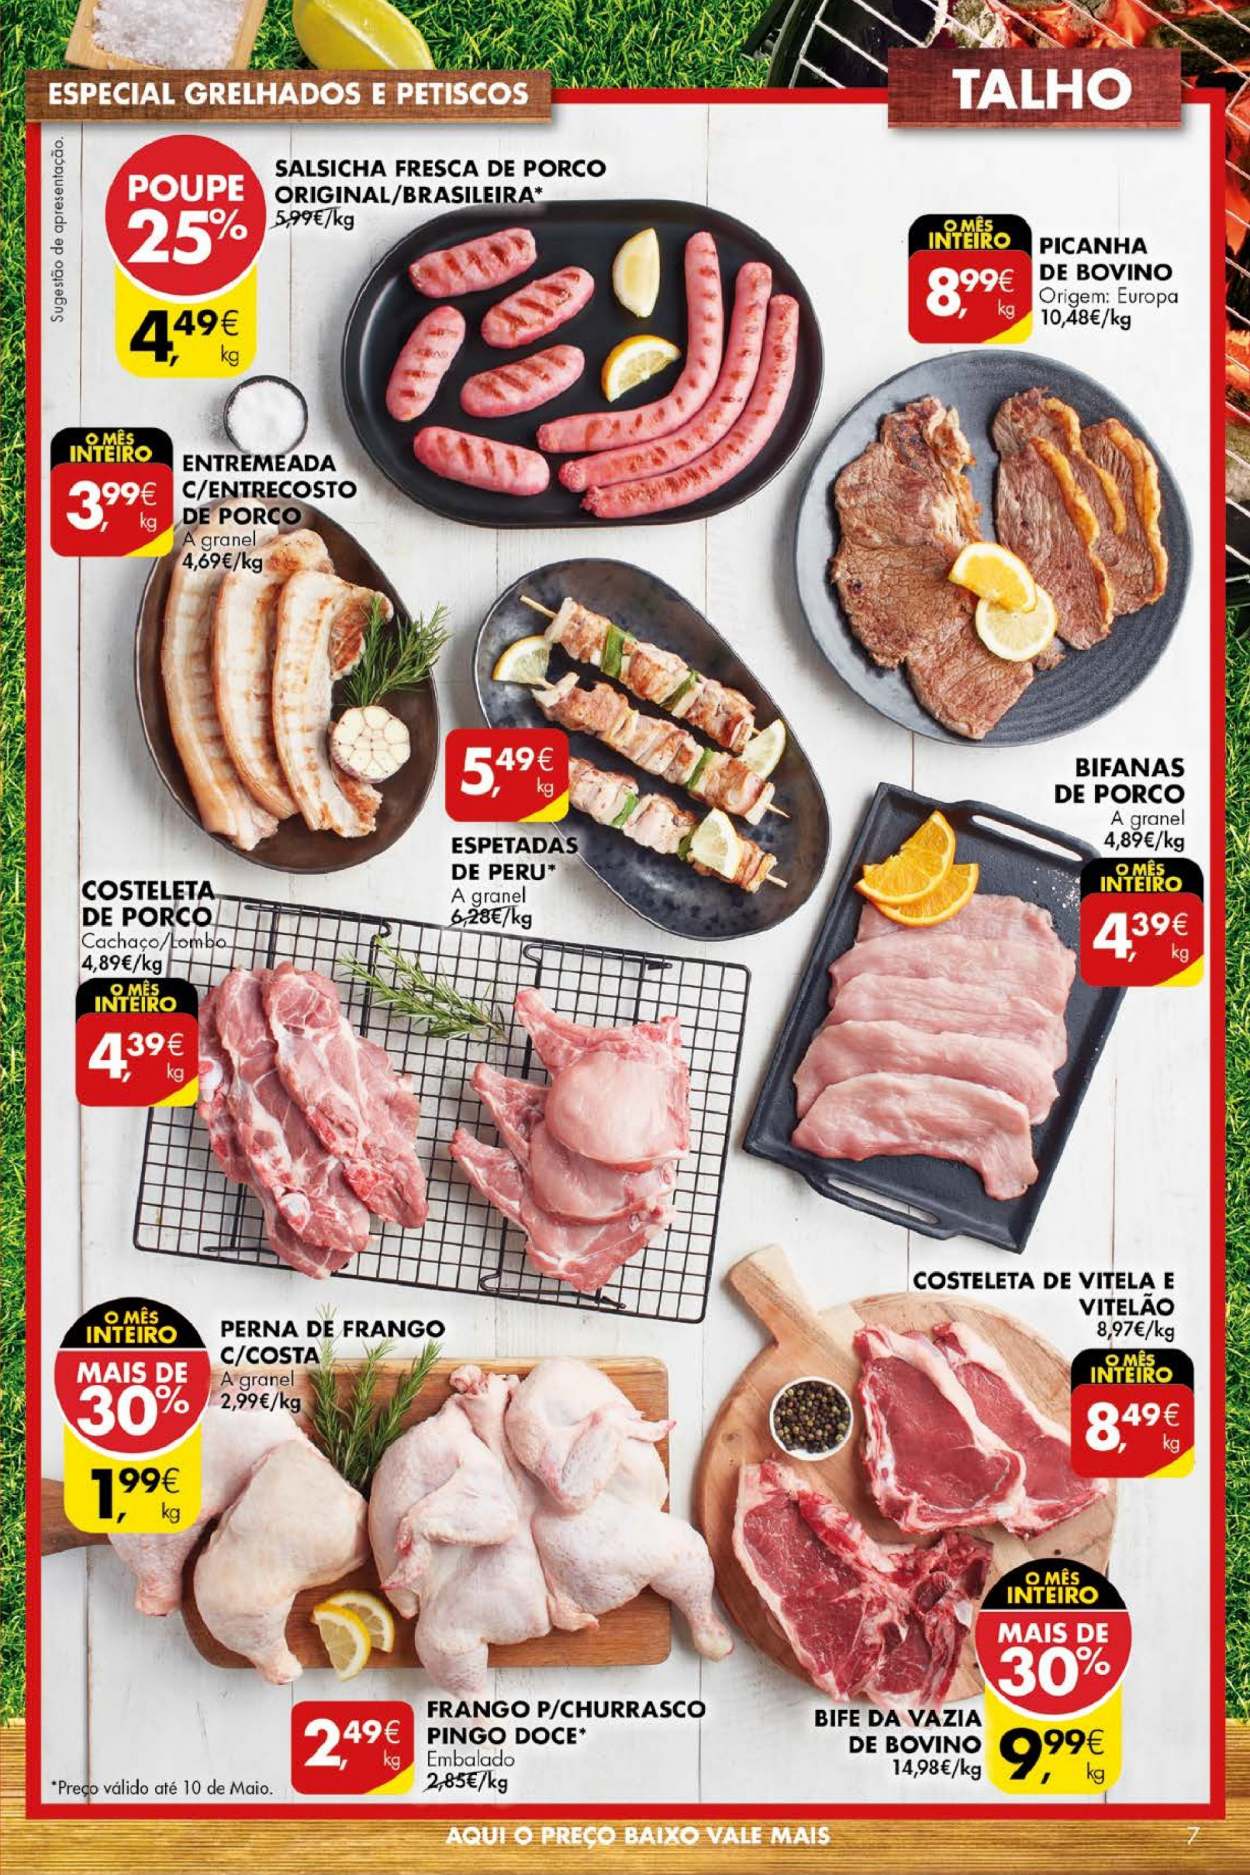 thumbnail - Folheto Pingo Doce - 4.5.2021 - 10.5.2021 - Produtos em promoção - picanha, bife, lombo, perú, perna de frango, vazia de bovino, salsicha. Página 7.